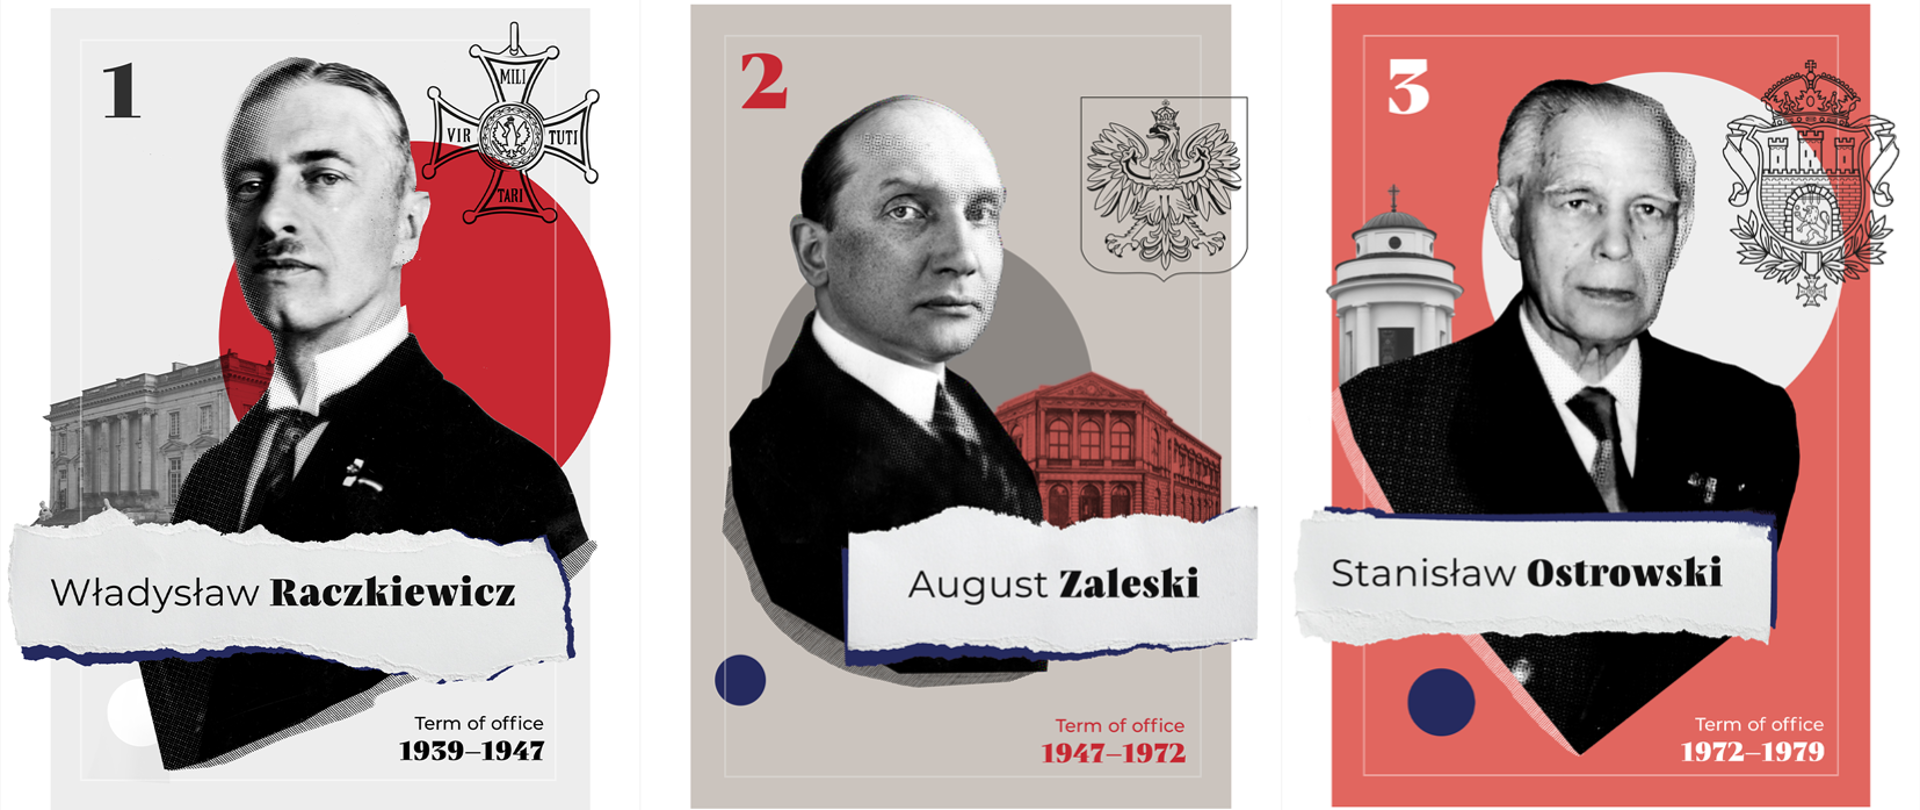 Polish Presidents in Exile Władysław Raczkiewicz, August Zaleski and Stanisław Ostrowski